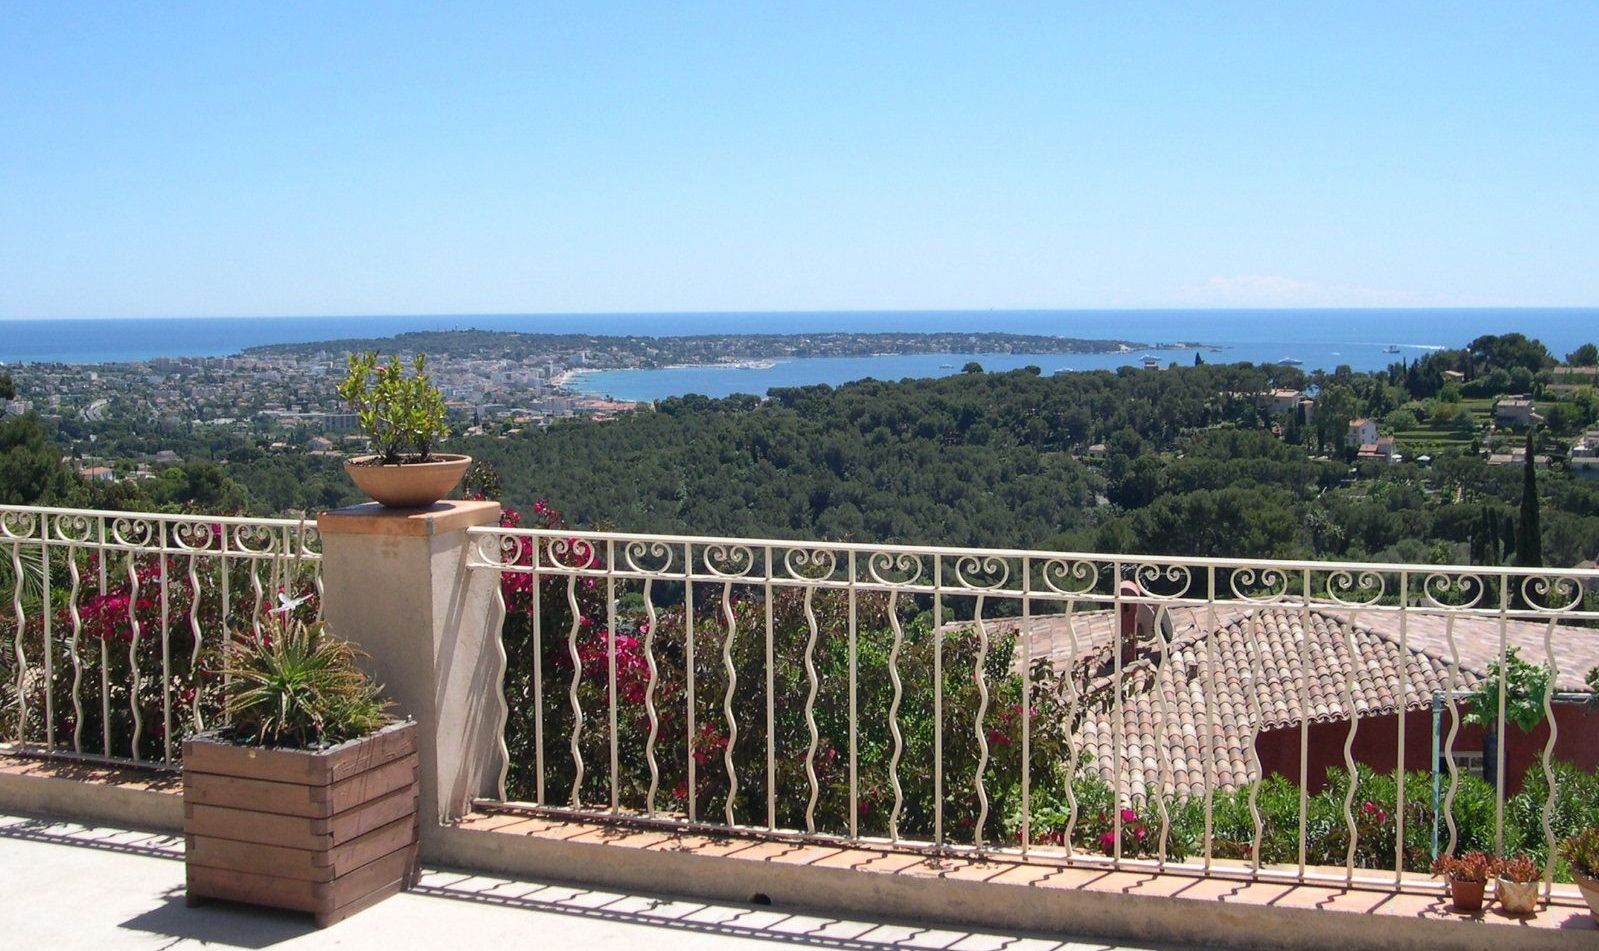 Wunderschöne Auswahl an Wohnungen und Villen zum Verkauf an der Cote d'Azur